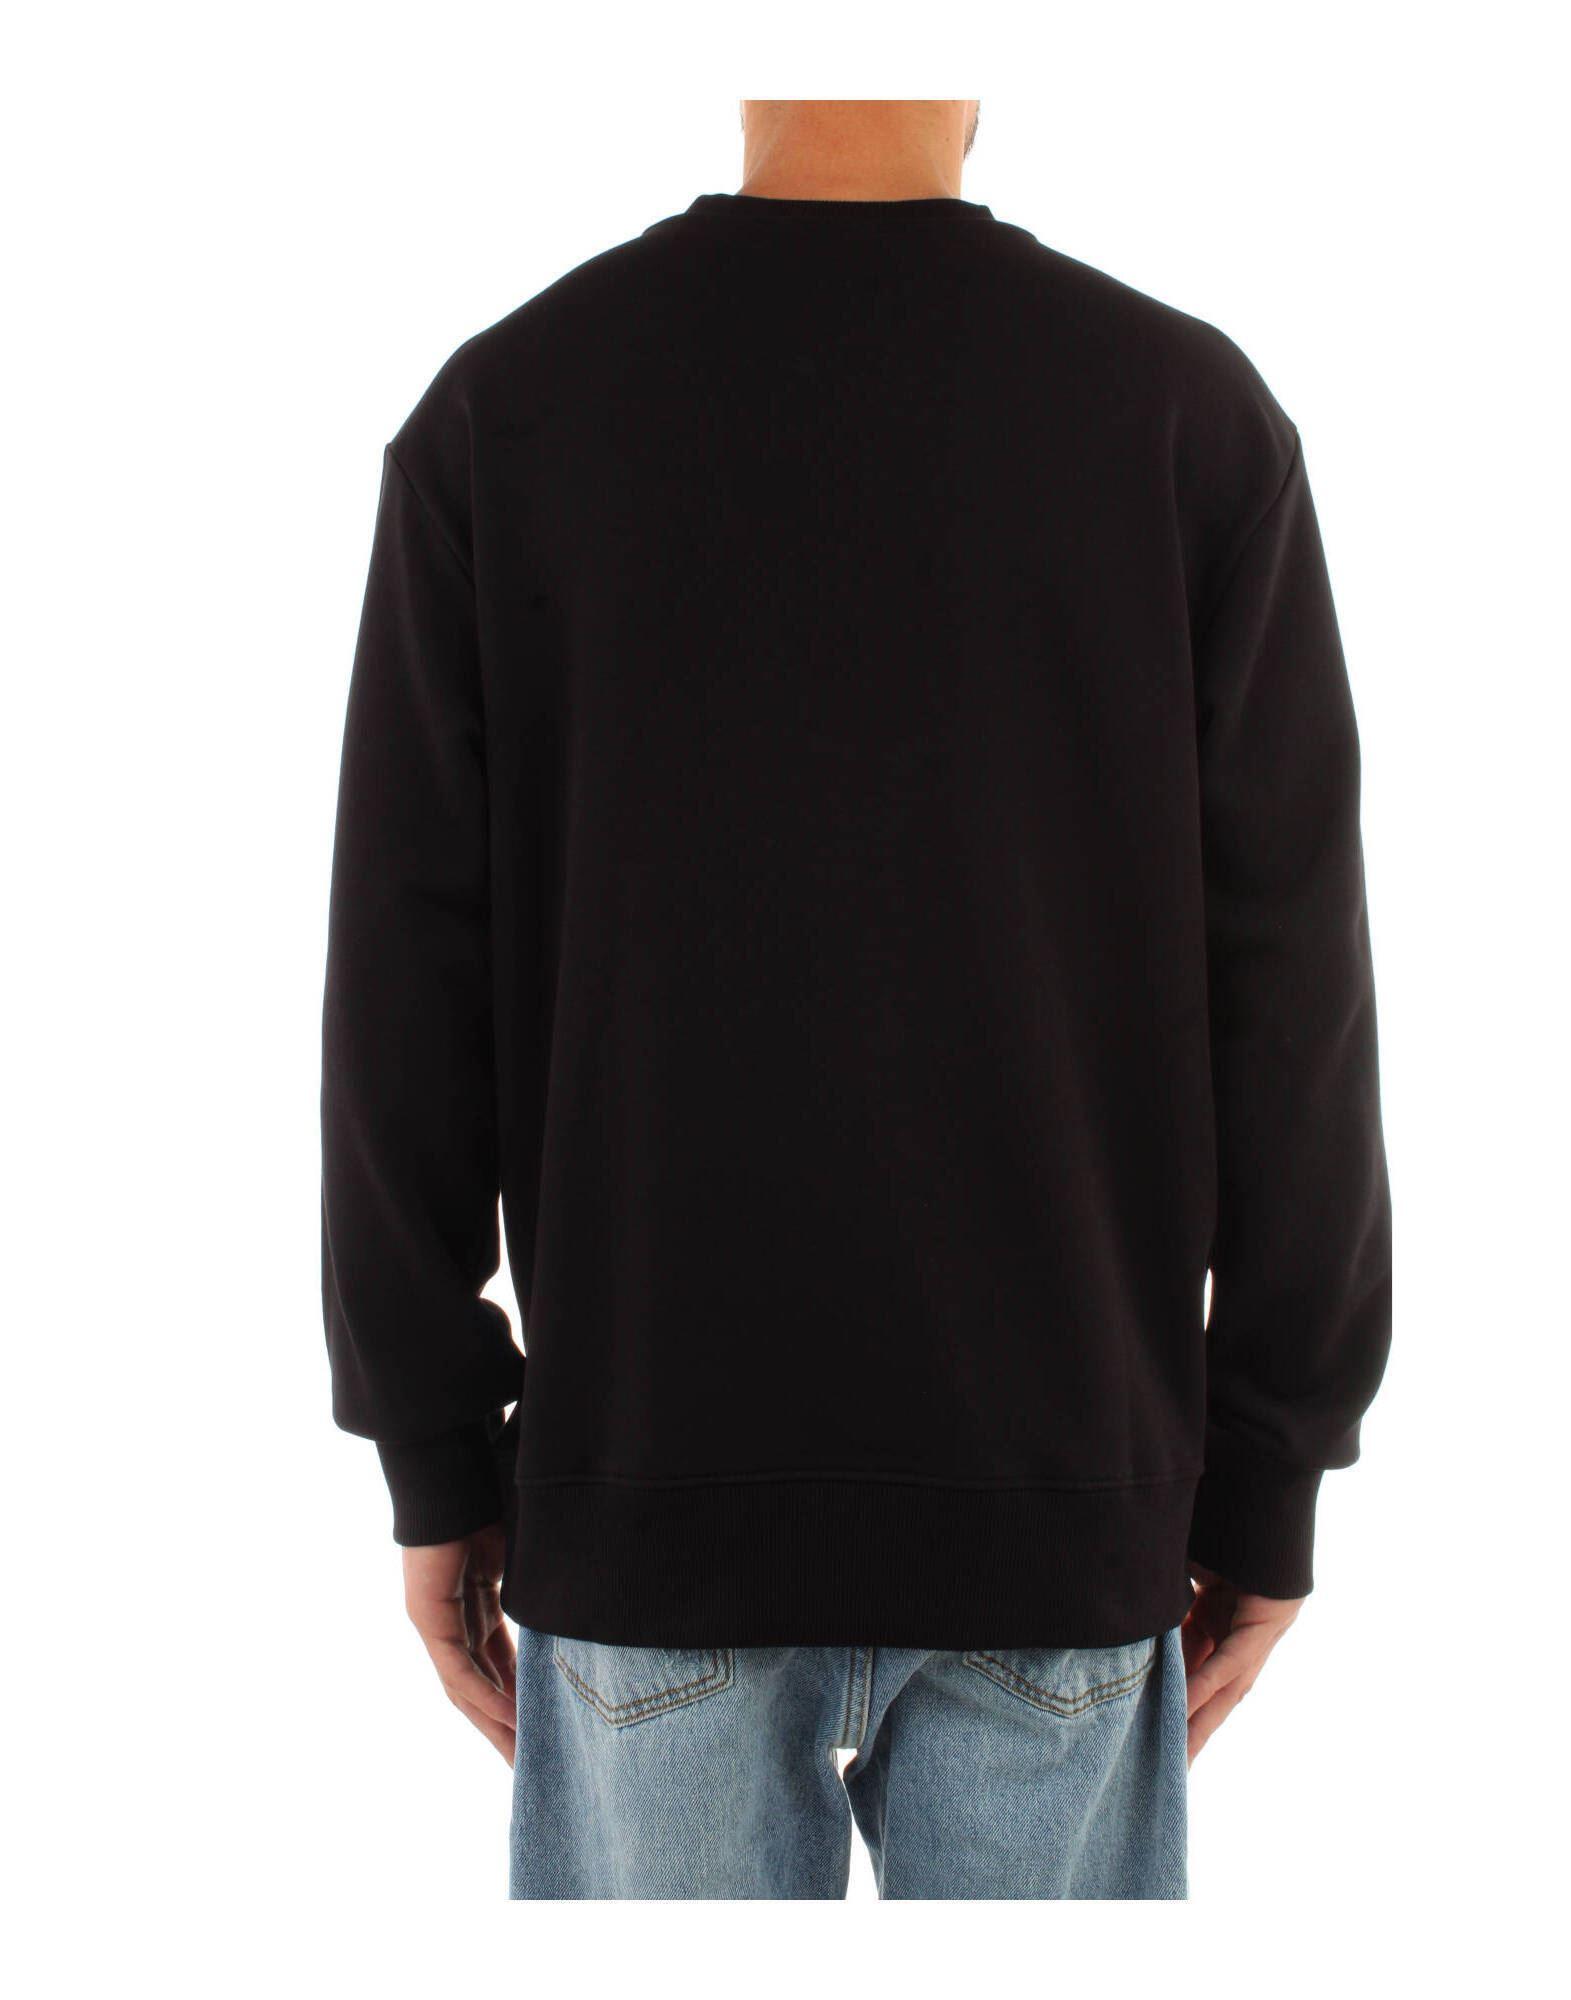 73GAIT16-899 Sweat-shirt Jean Versace Jeans Couture pour homme en coloris Noir Homme Vêtements Articles de sport et dentraînement Sweats 